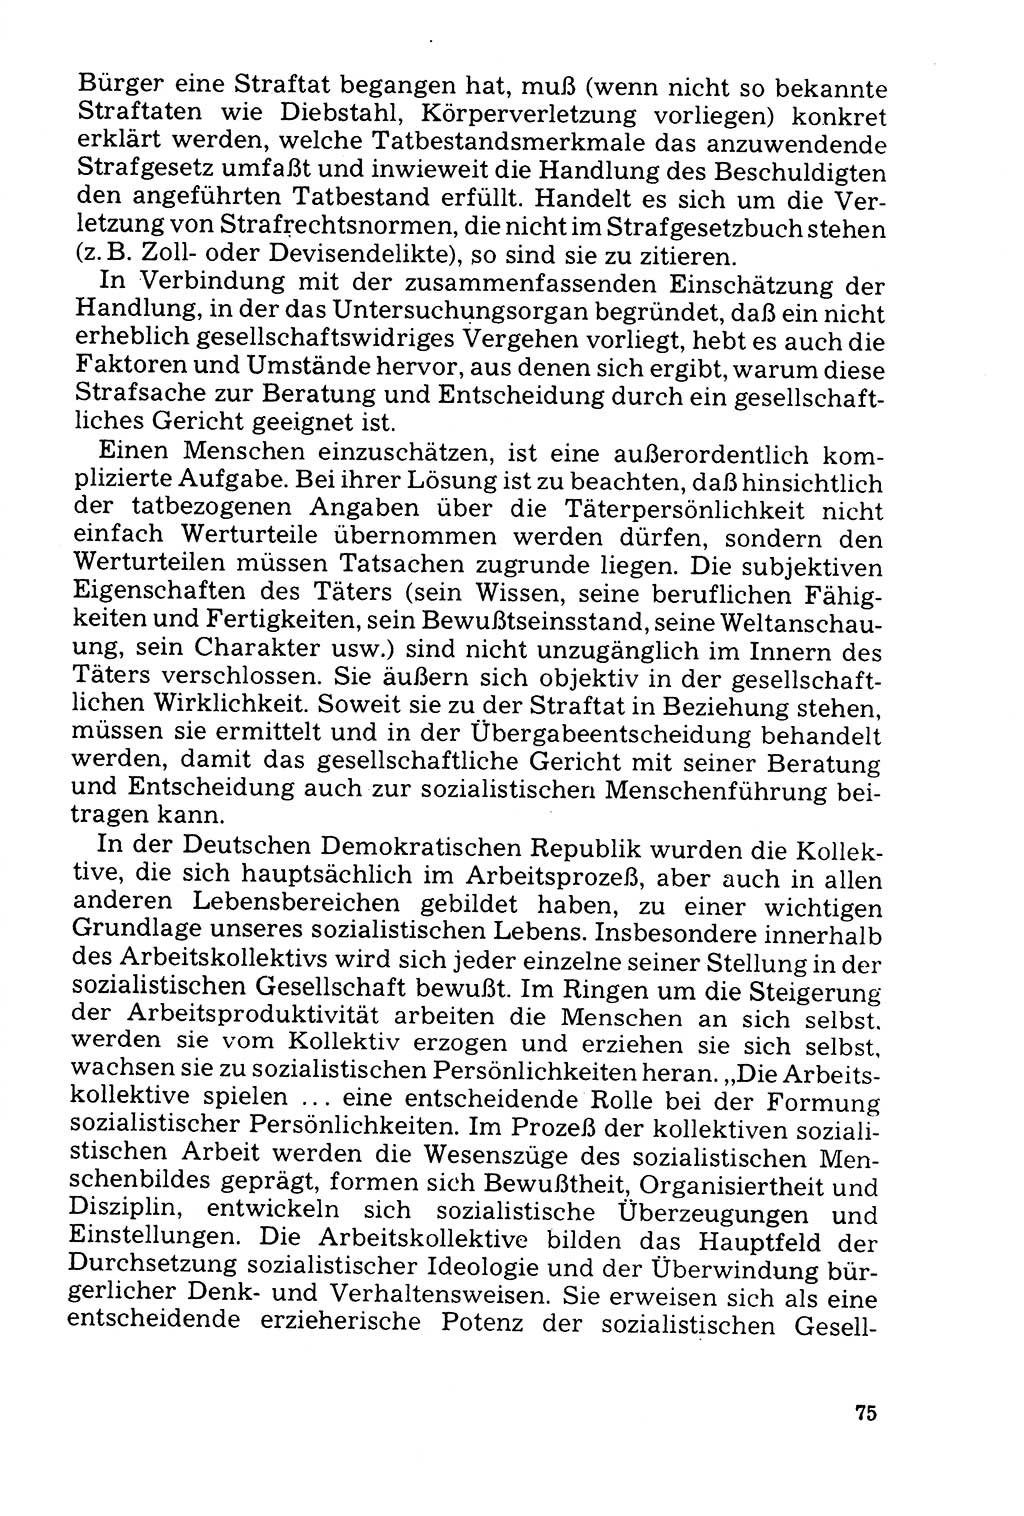 Der AbschluÃŸ des Ermittlungsverfahrens [Deutsche Demokratische Republik (DDR)] 1978, Seite 75 (Abschl. EV DDR 1978, S. 75)